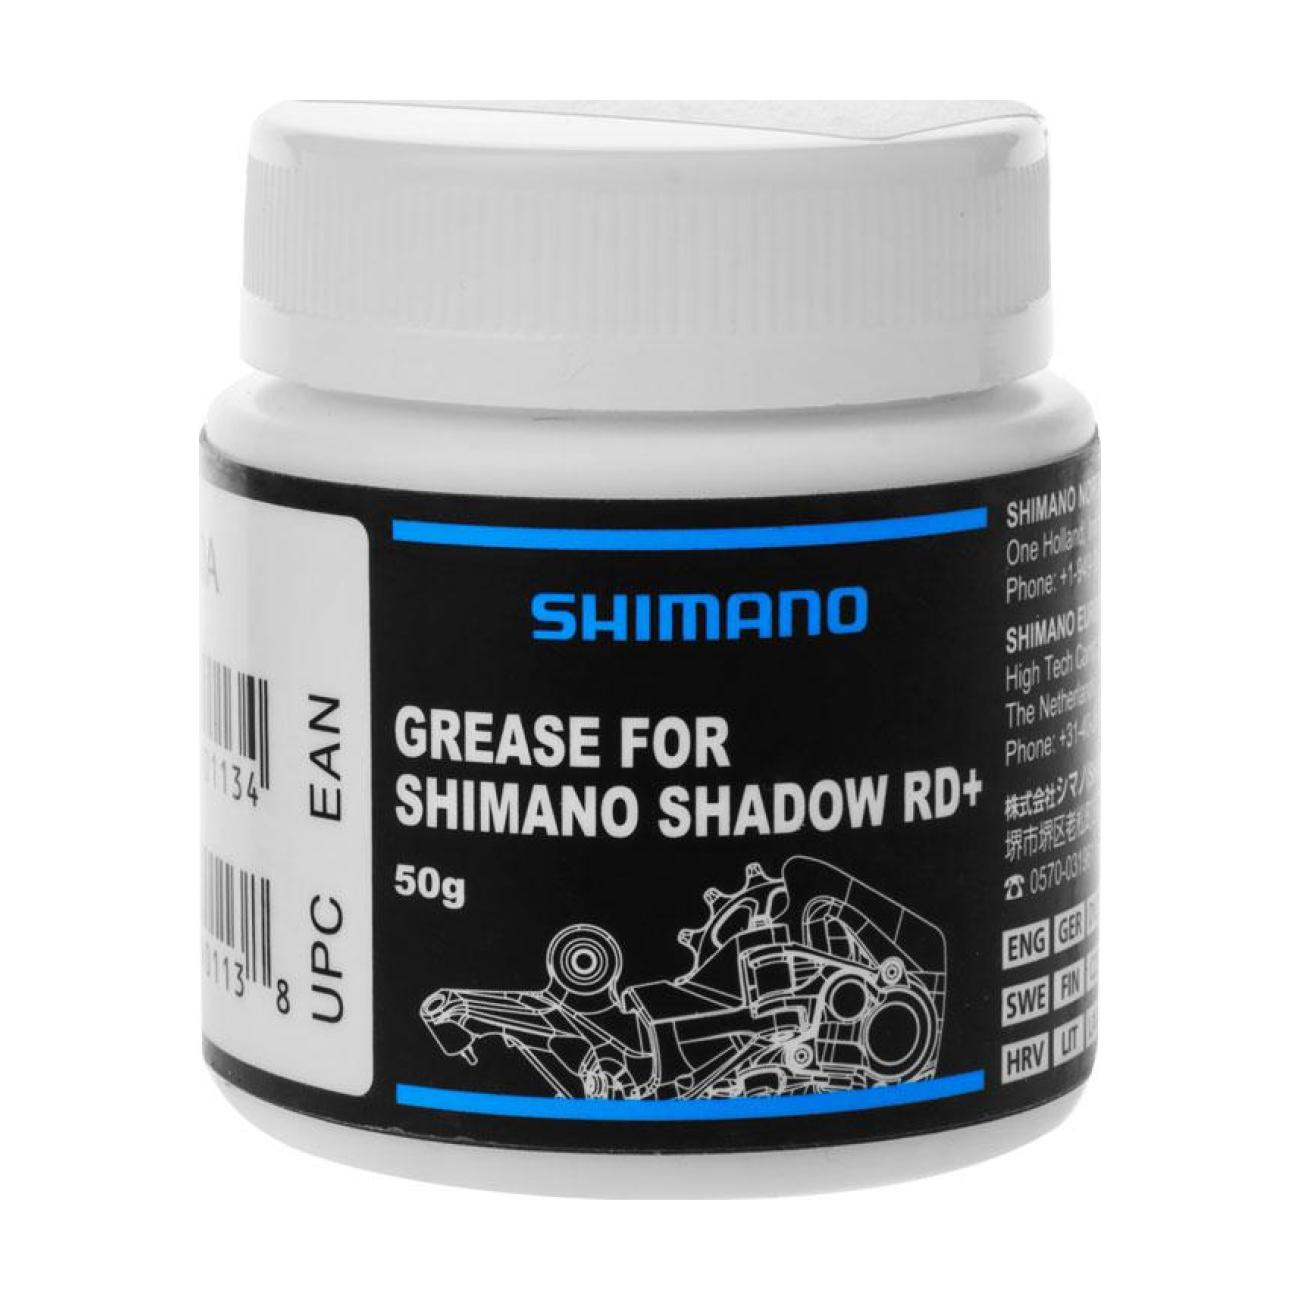 SHIMANO VASELINE 75g